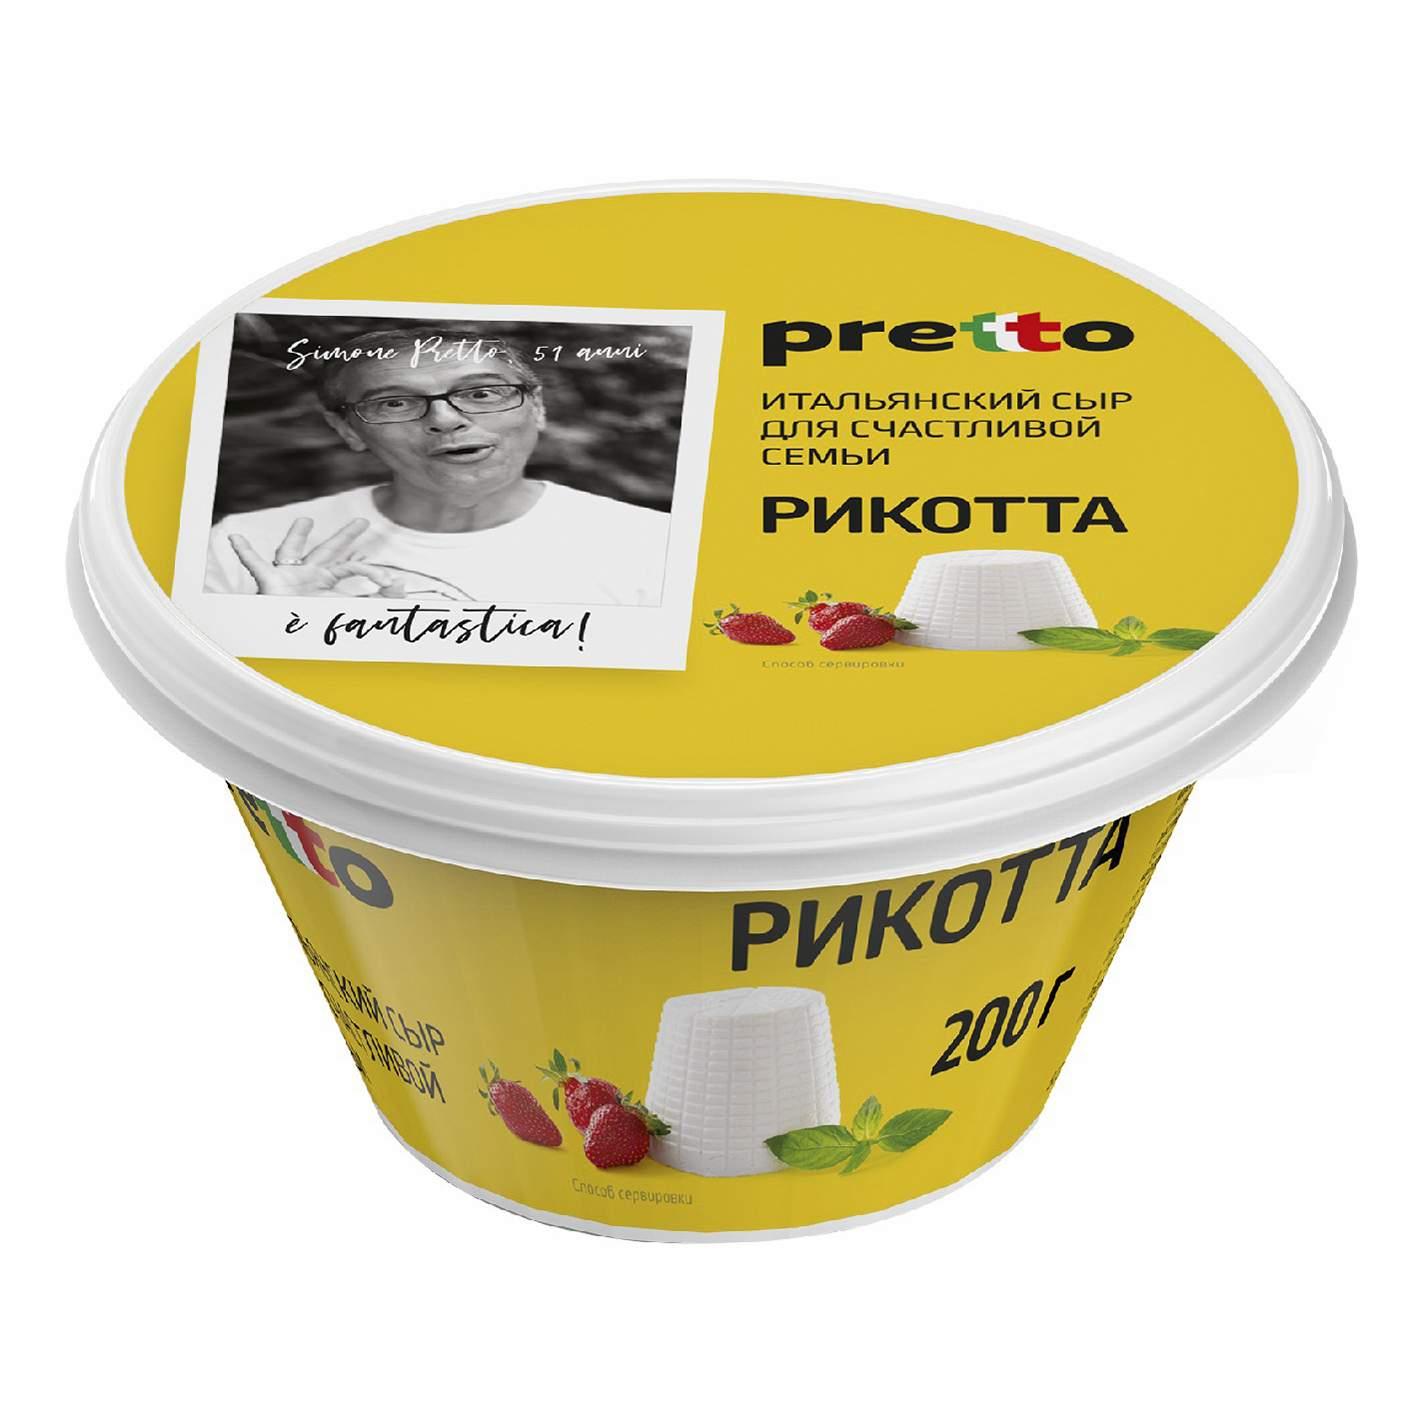 Сыр Рикотта Pretto 45%  Россия  200г - интернет-магазин Близнецы